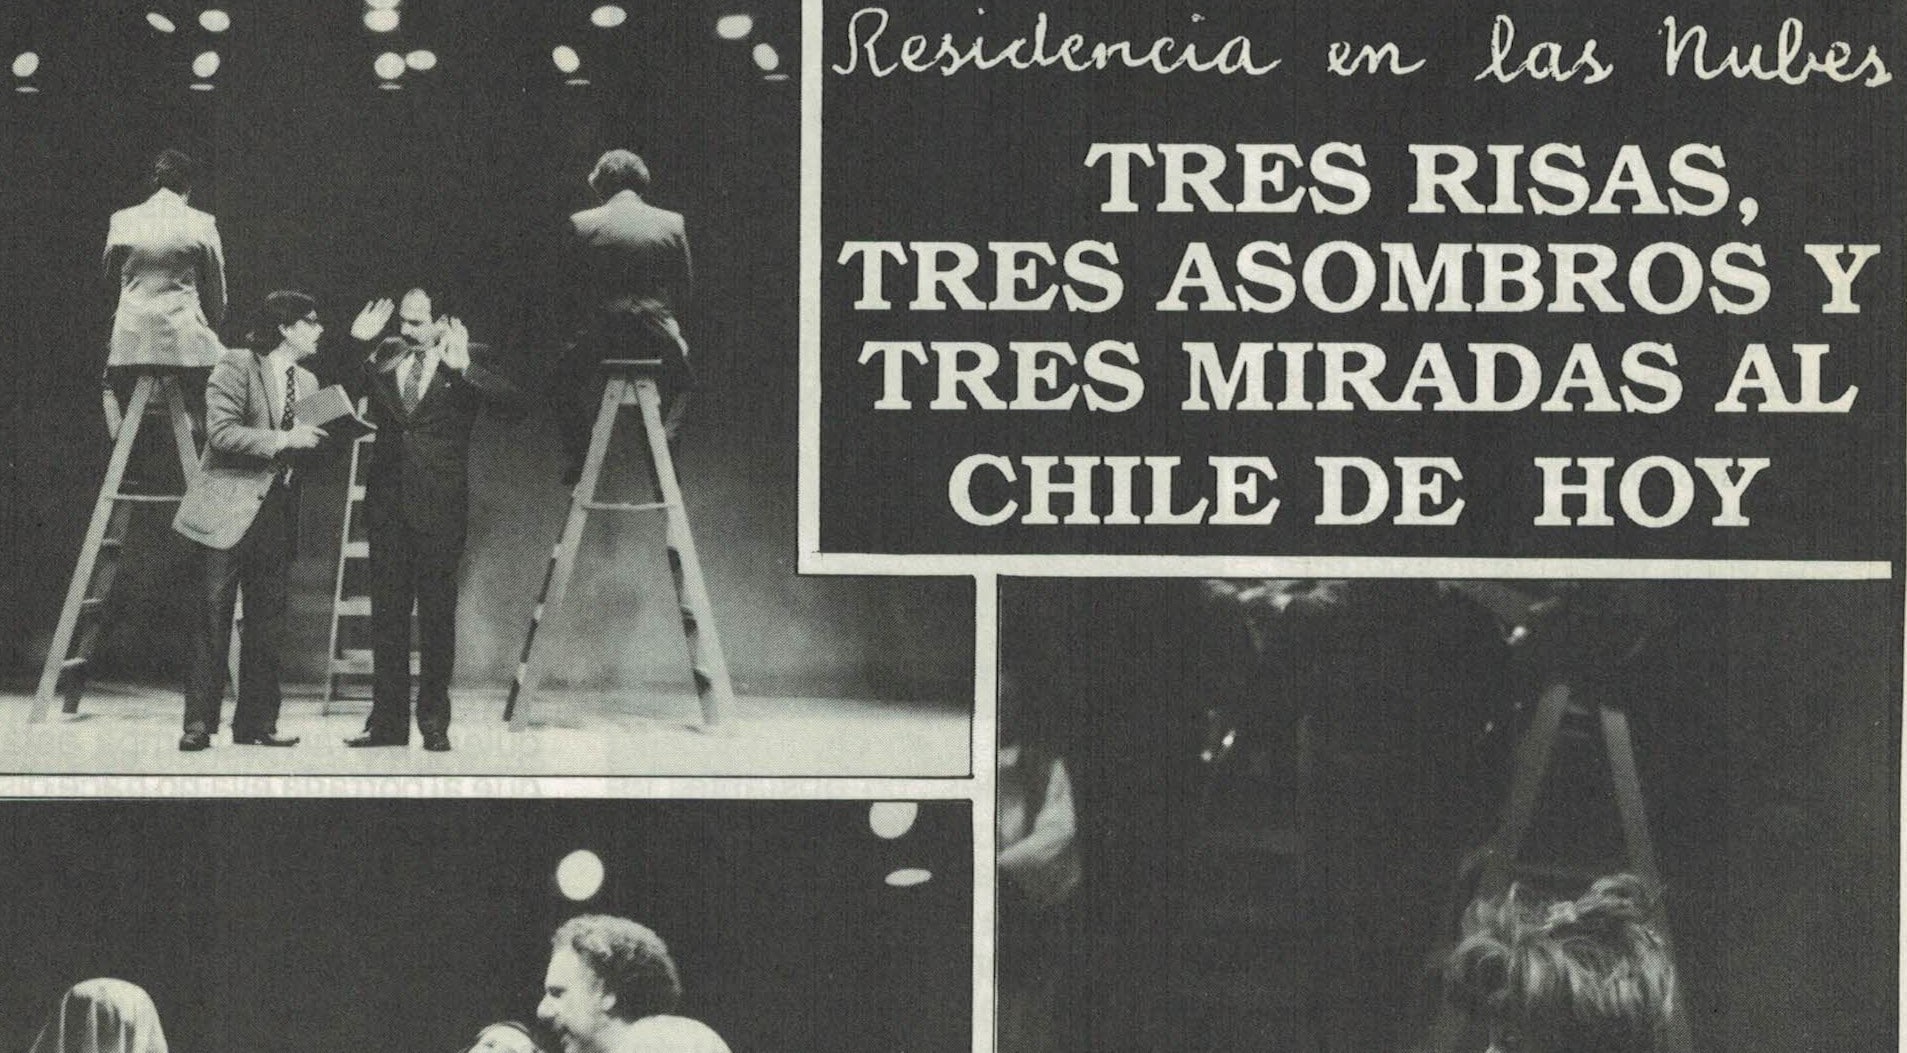 RESIDENCIA EN LAS NUBES: TRES RISAS, TRES ASOMBROS Y TRES MIRADAS AL CHILE DE HOY.